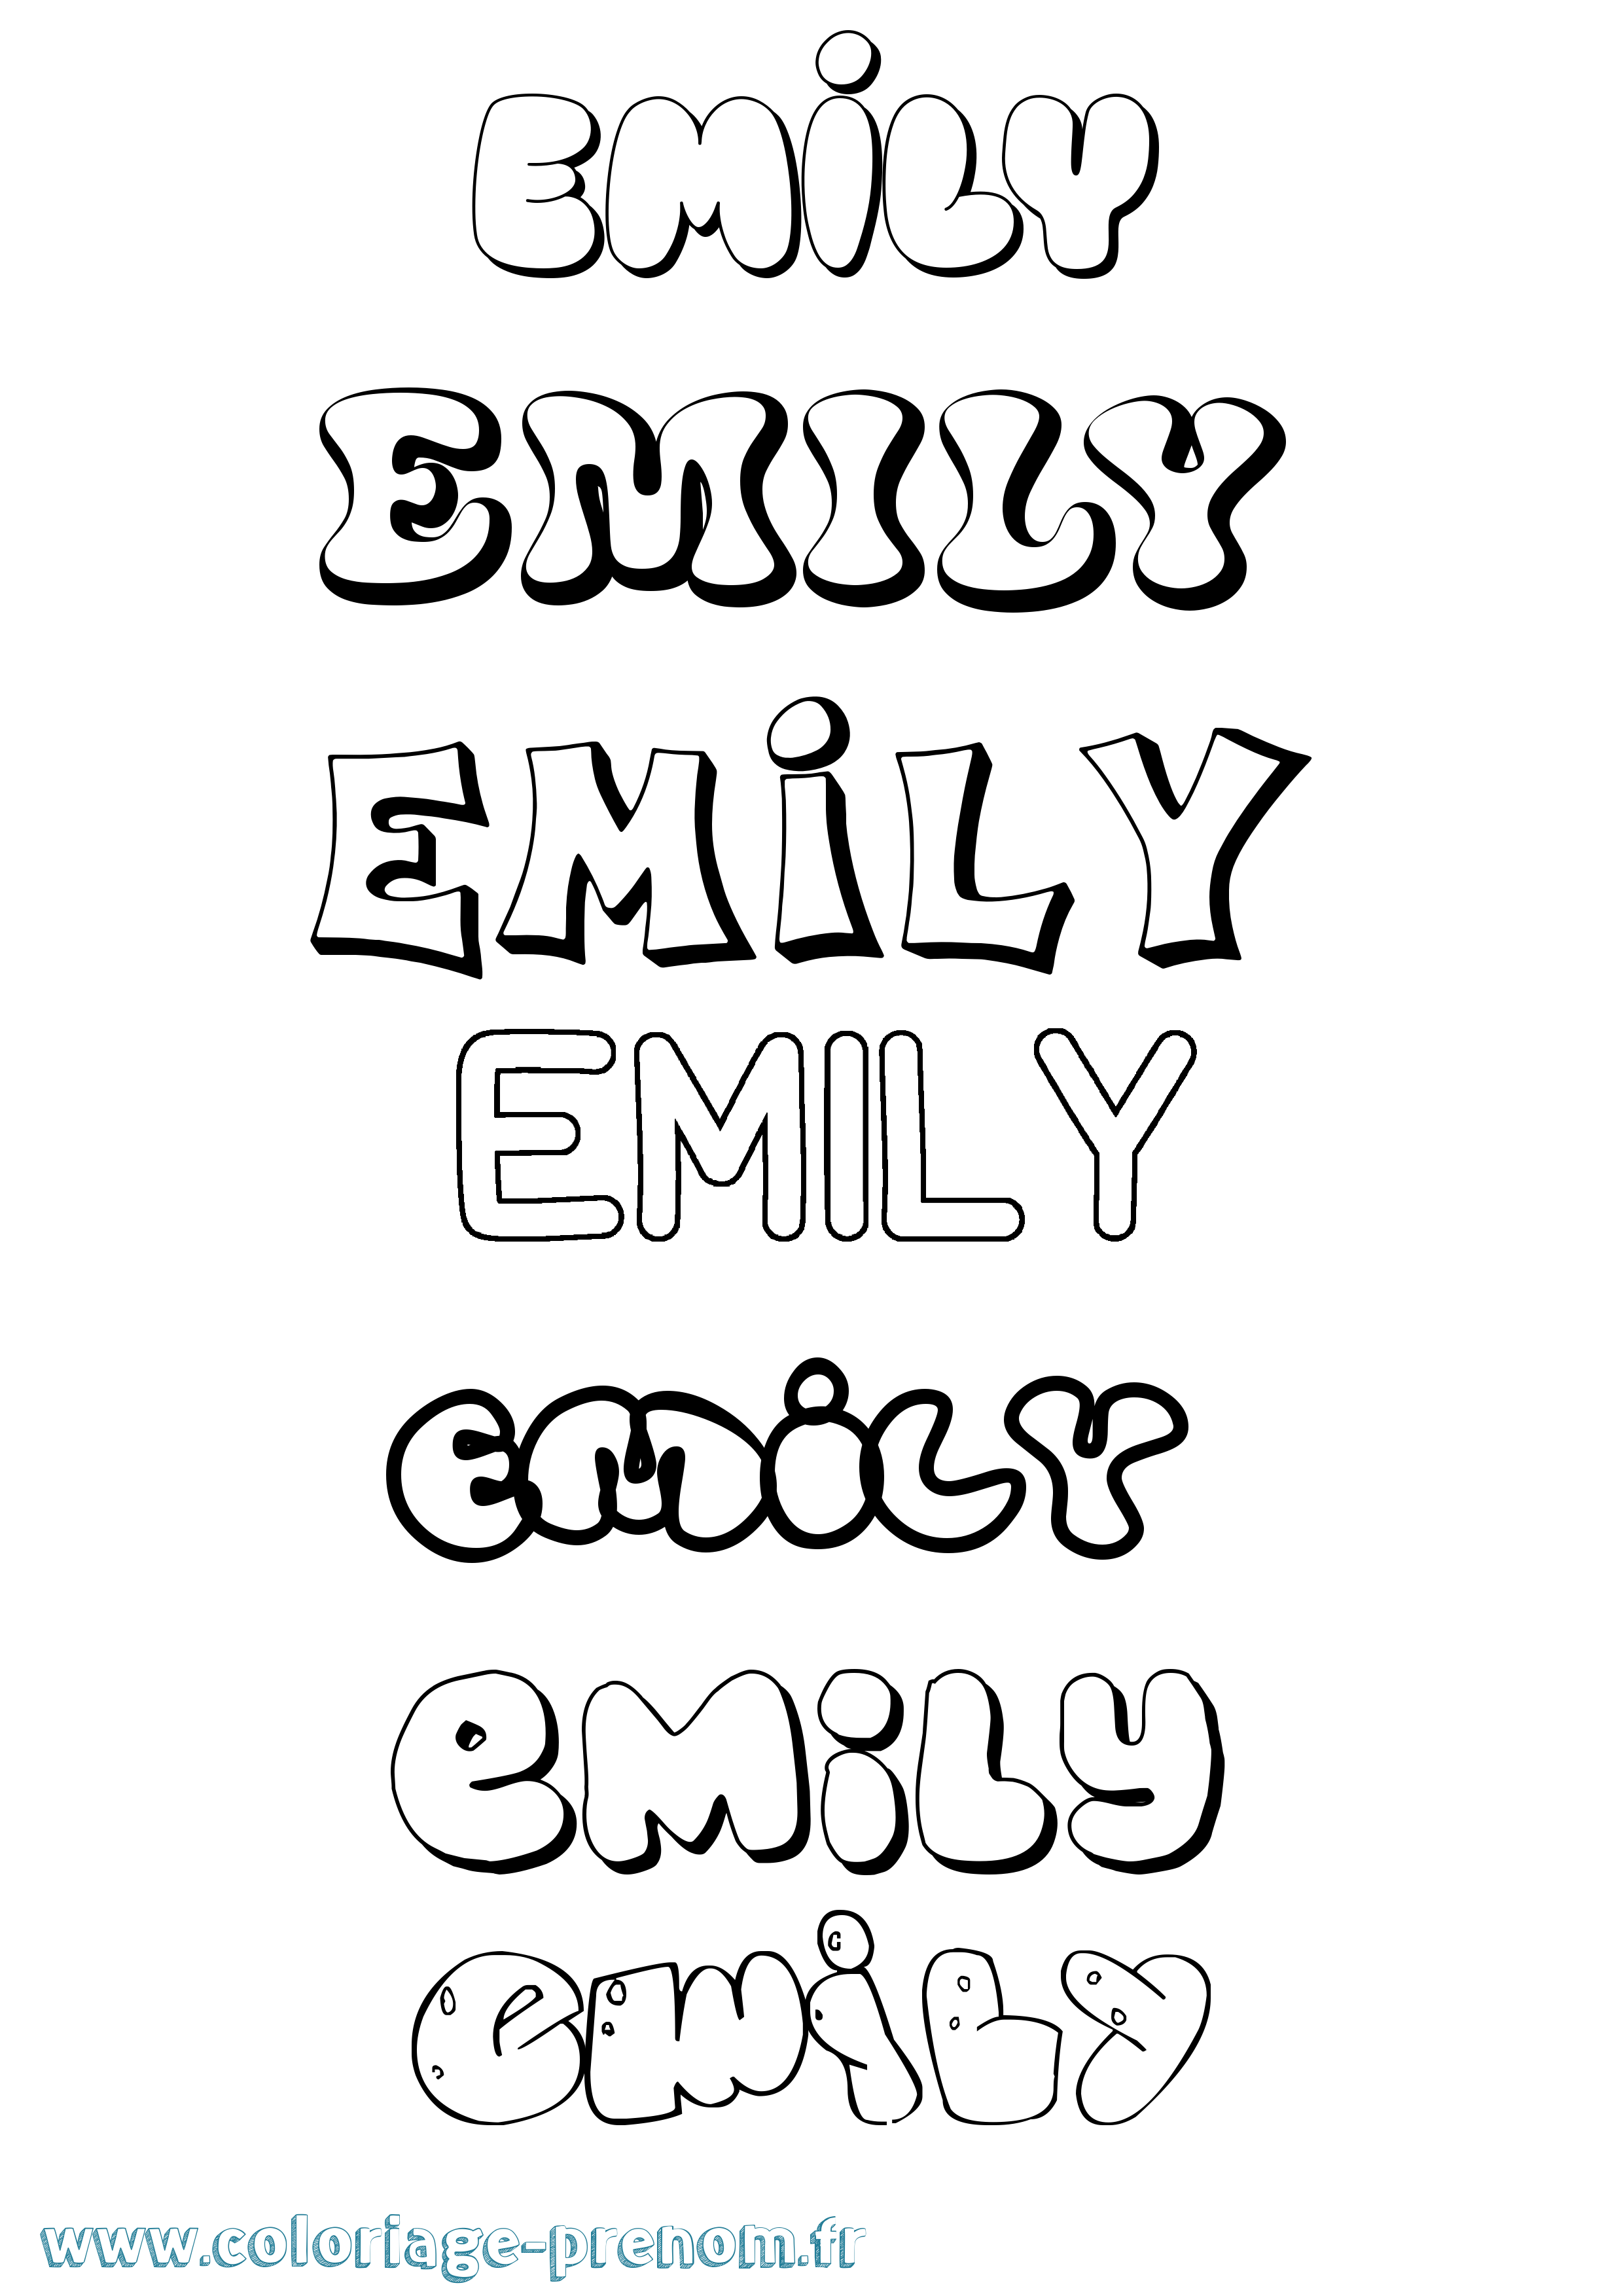 Coloriage prénom Emily Bubble